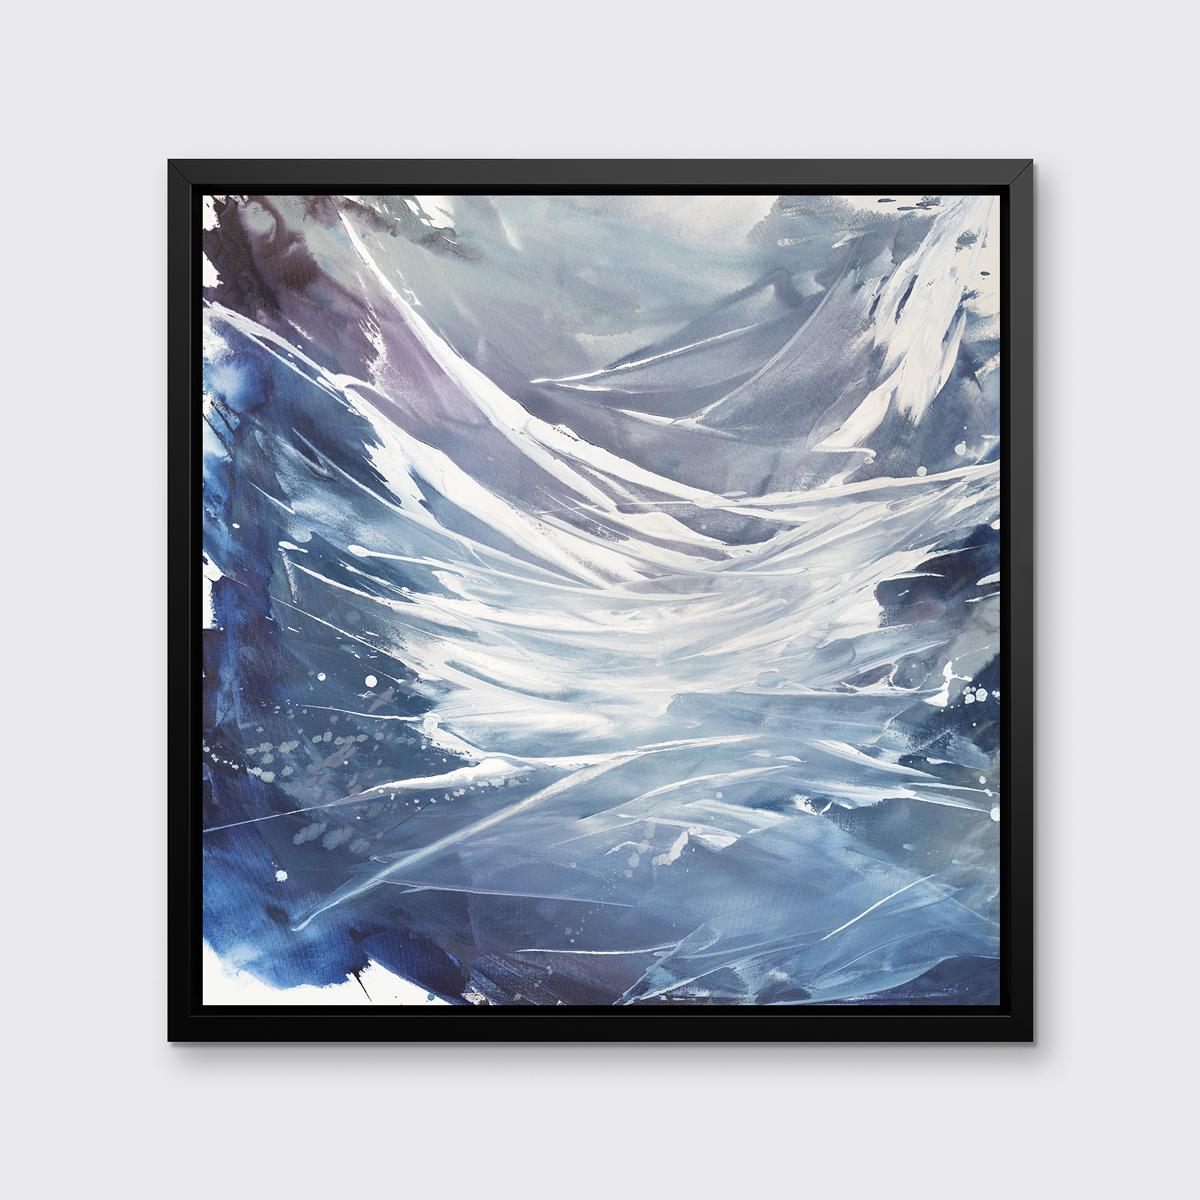 Dieser zeitgenössische abstrakte Druck in limitierter Auflage von Teodora Guererra zeichnet sich durch eine kühle Farbpalette aus, bei der sich blaue, graue, violette und weiße Farbtöne in schwungvollen Gesten über das Werk verteilen.

Dieser